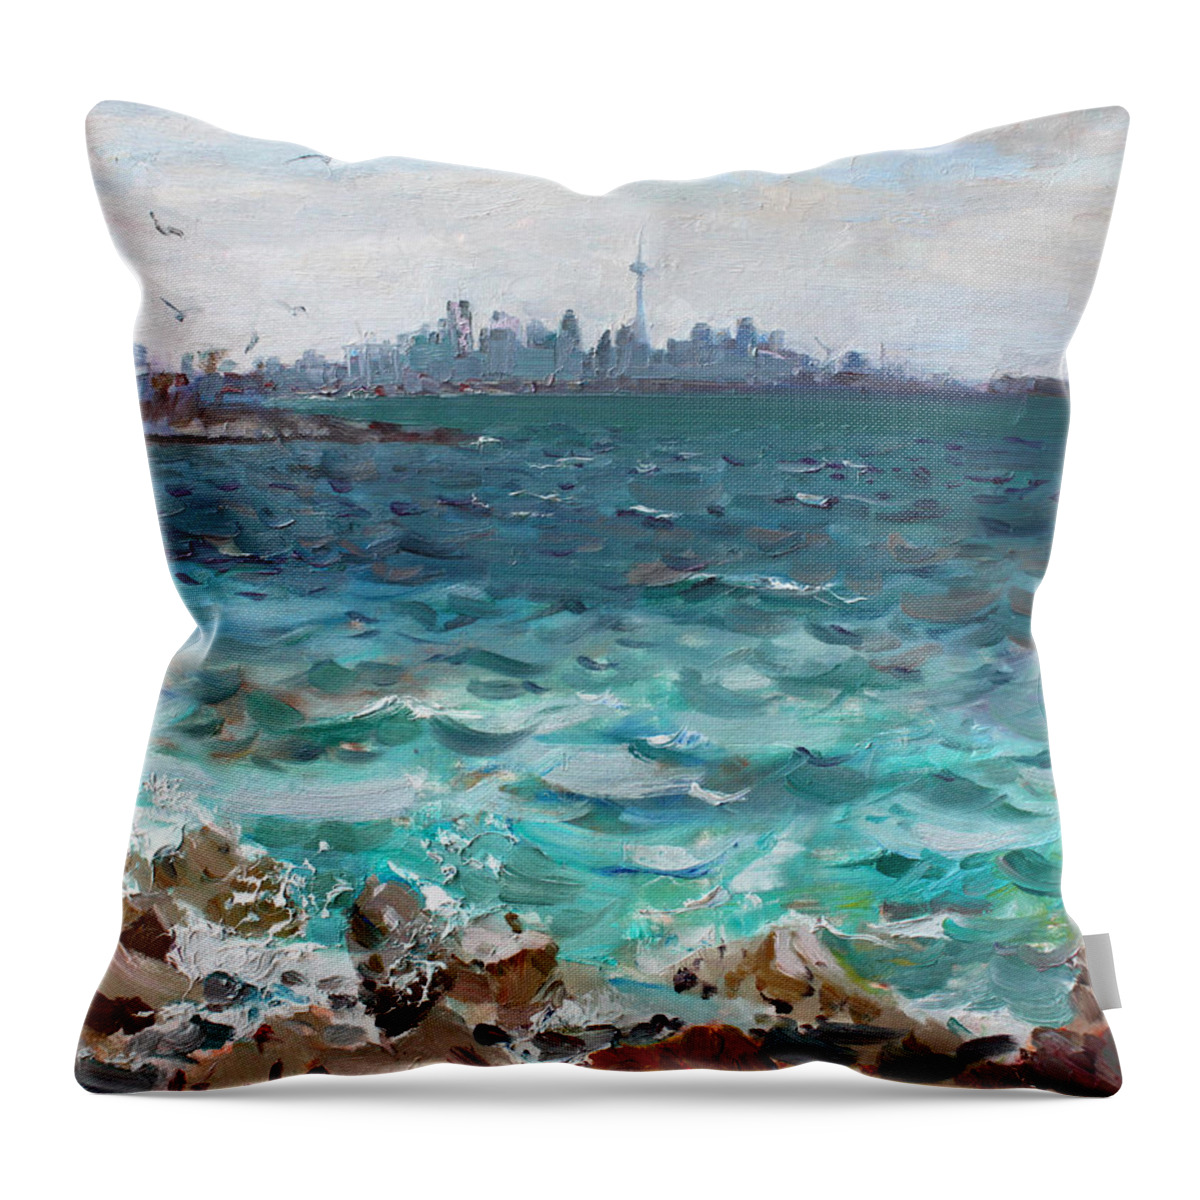 Toronto Skyline Throw Pillow featuring the painting Toronto Skyline #2 by Ylli Haruni